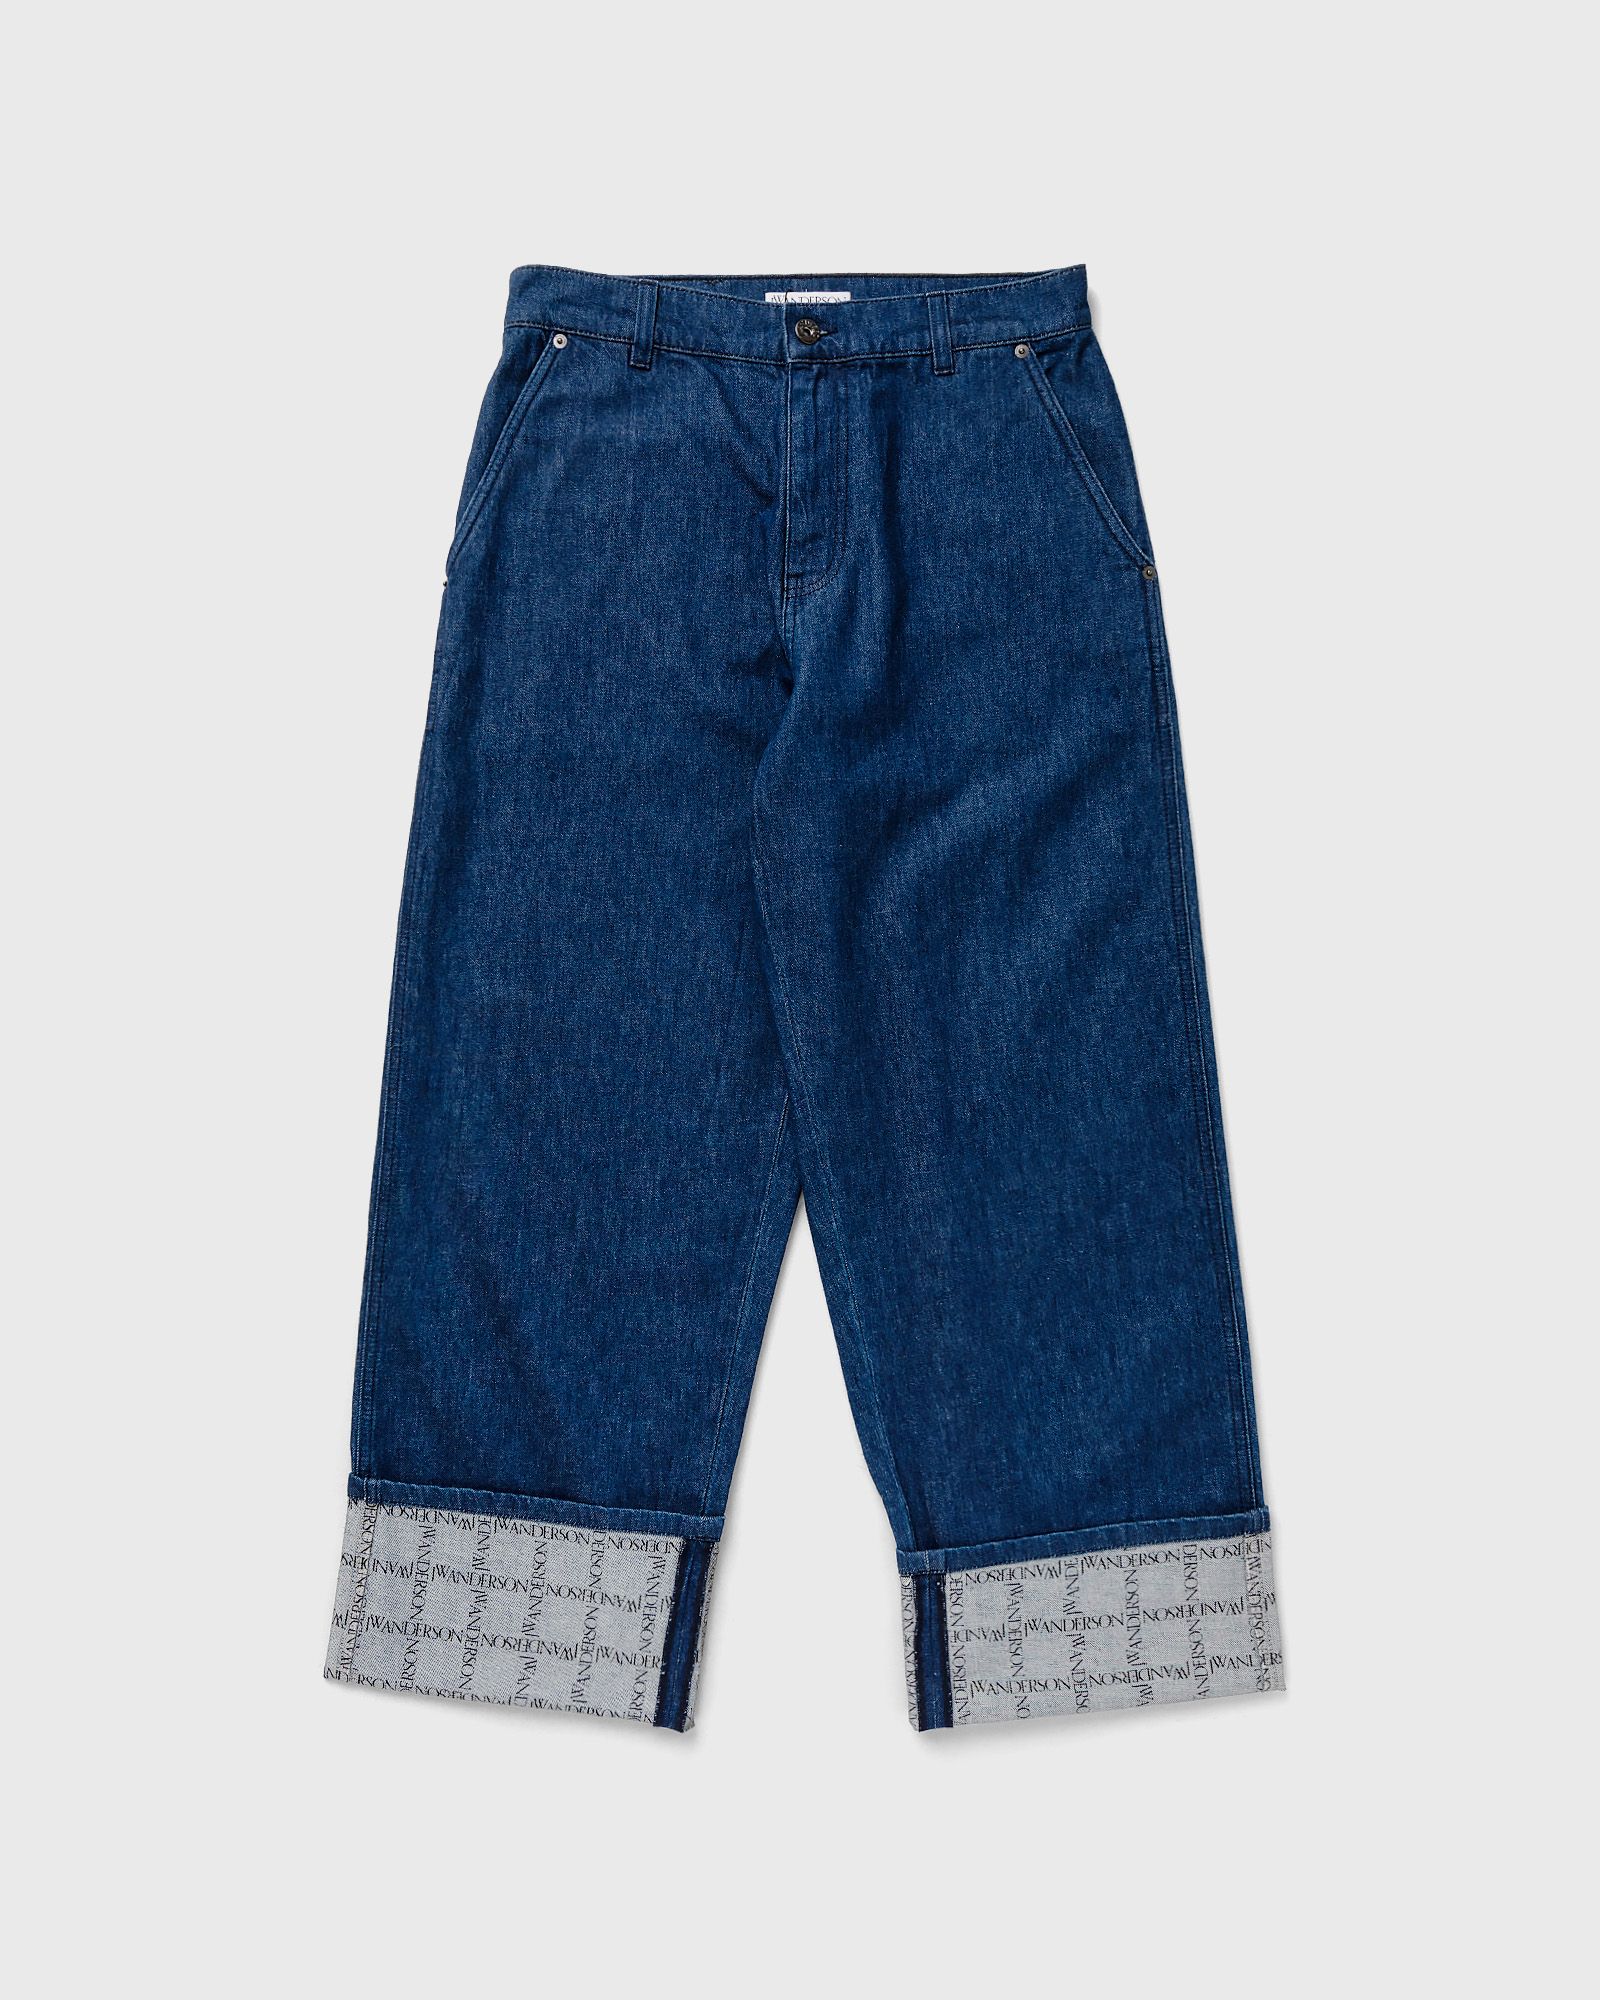 JW Anderson - logo grid turn up workwear jeans men jeans blue in größe:l